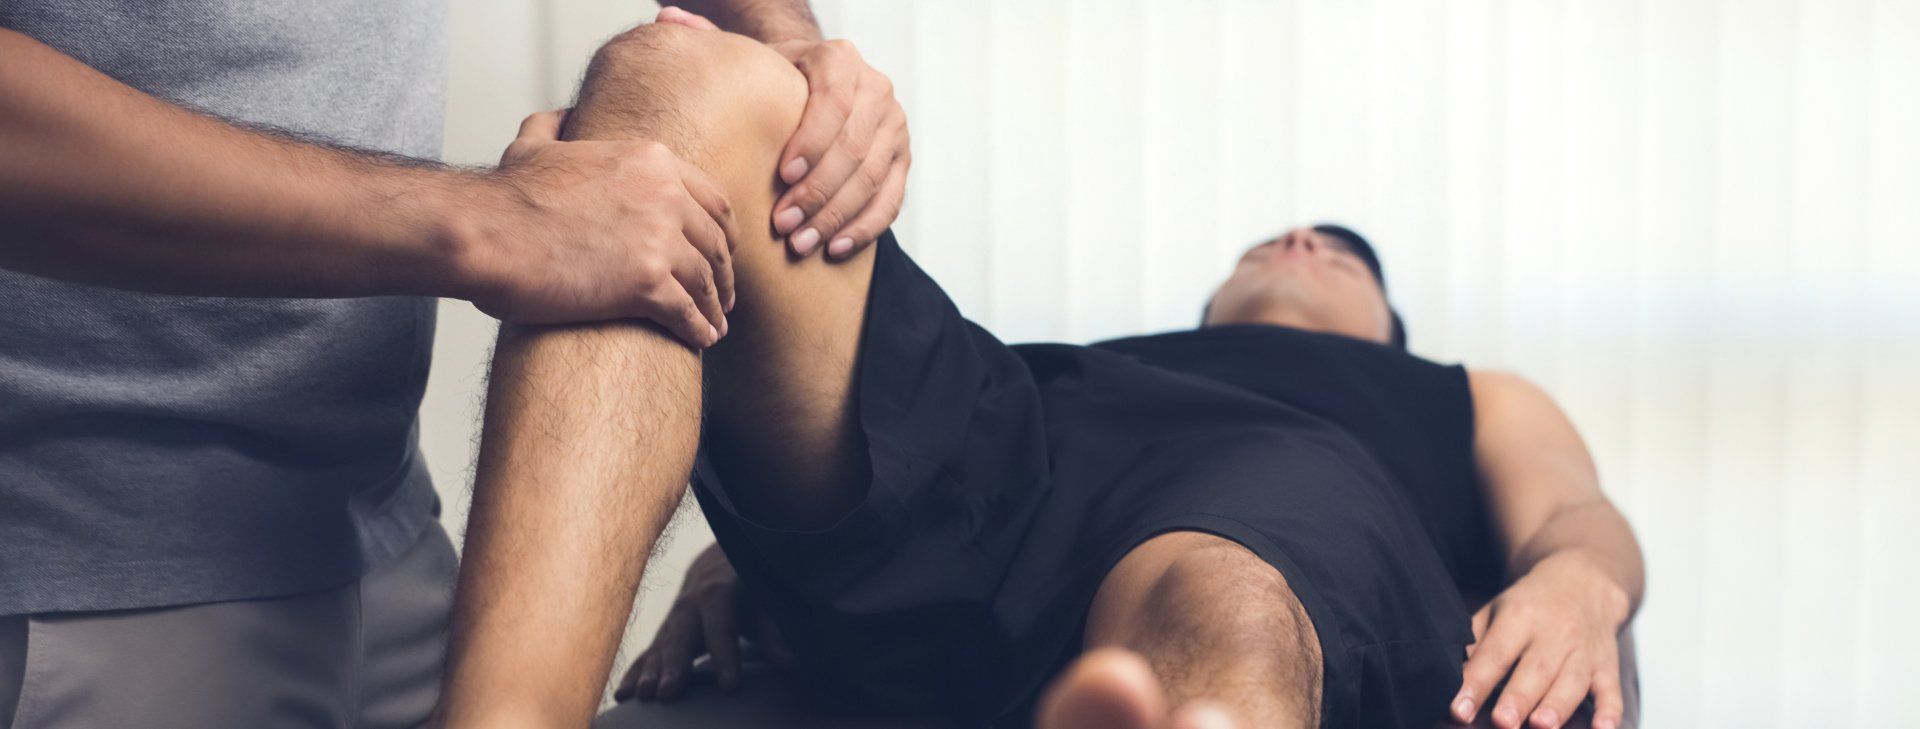 Chiropractic Adjustment knee pain